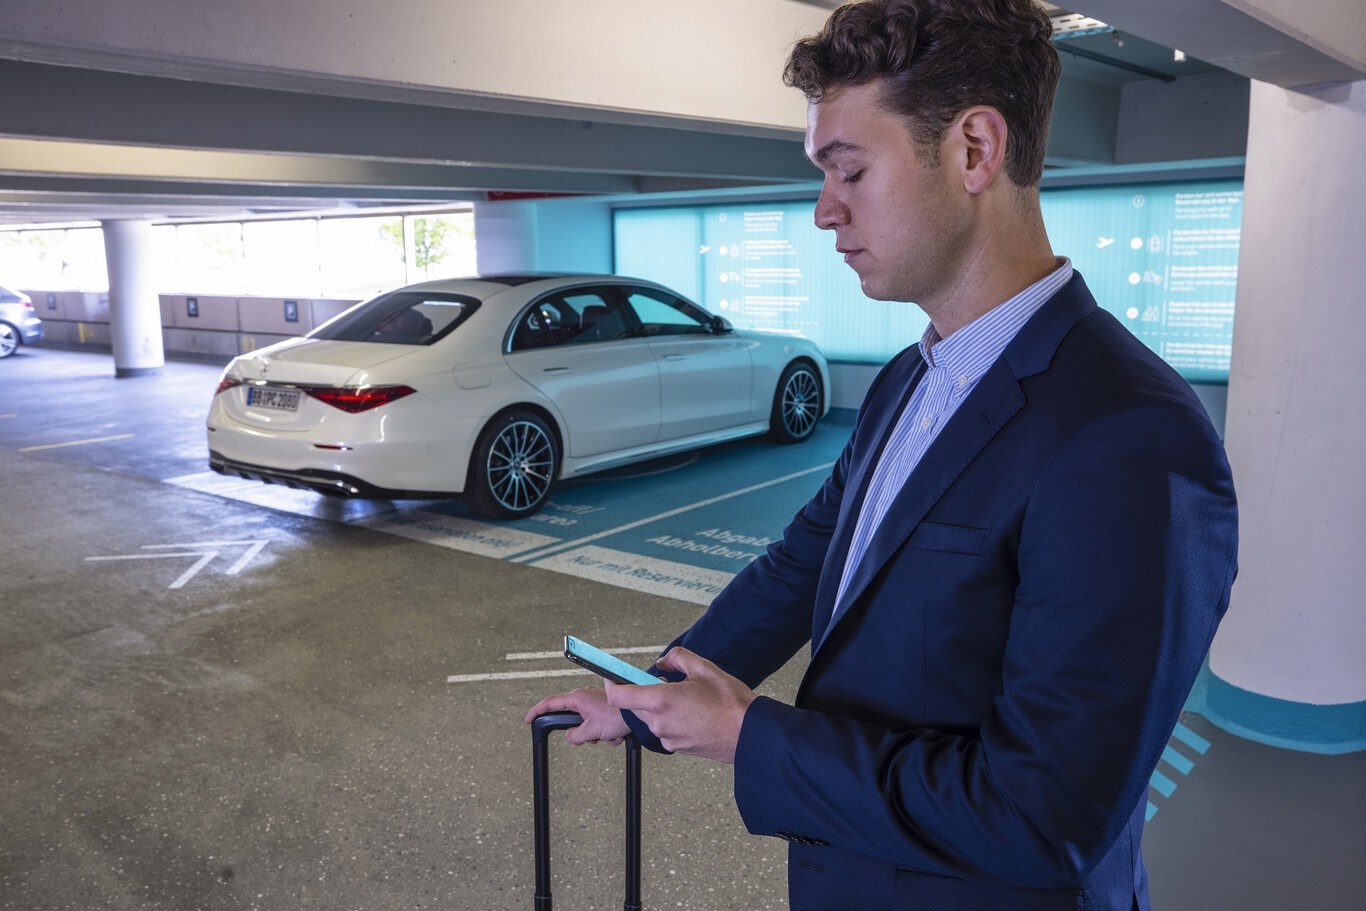 Mercedes muestra en video alucinante aparcamiento sin conductor